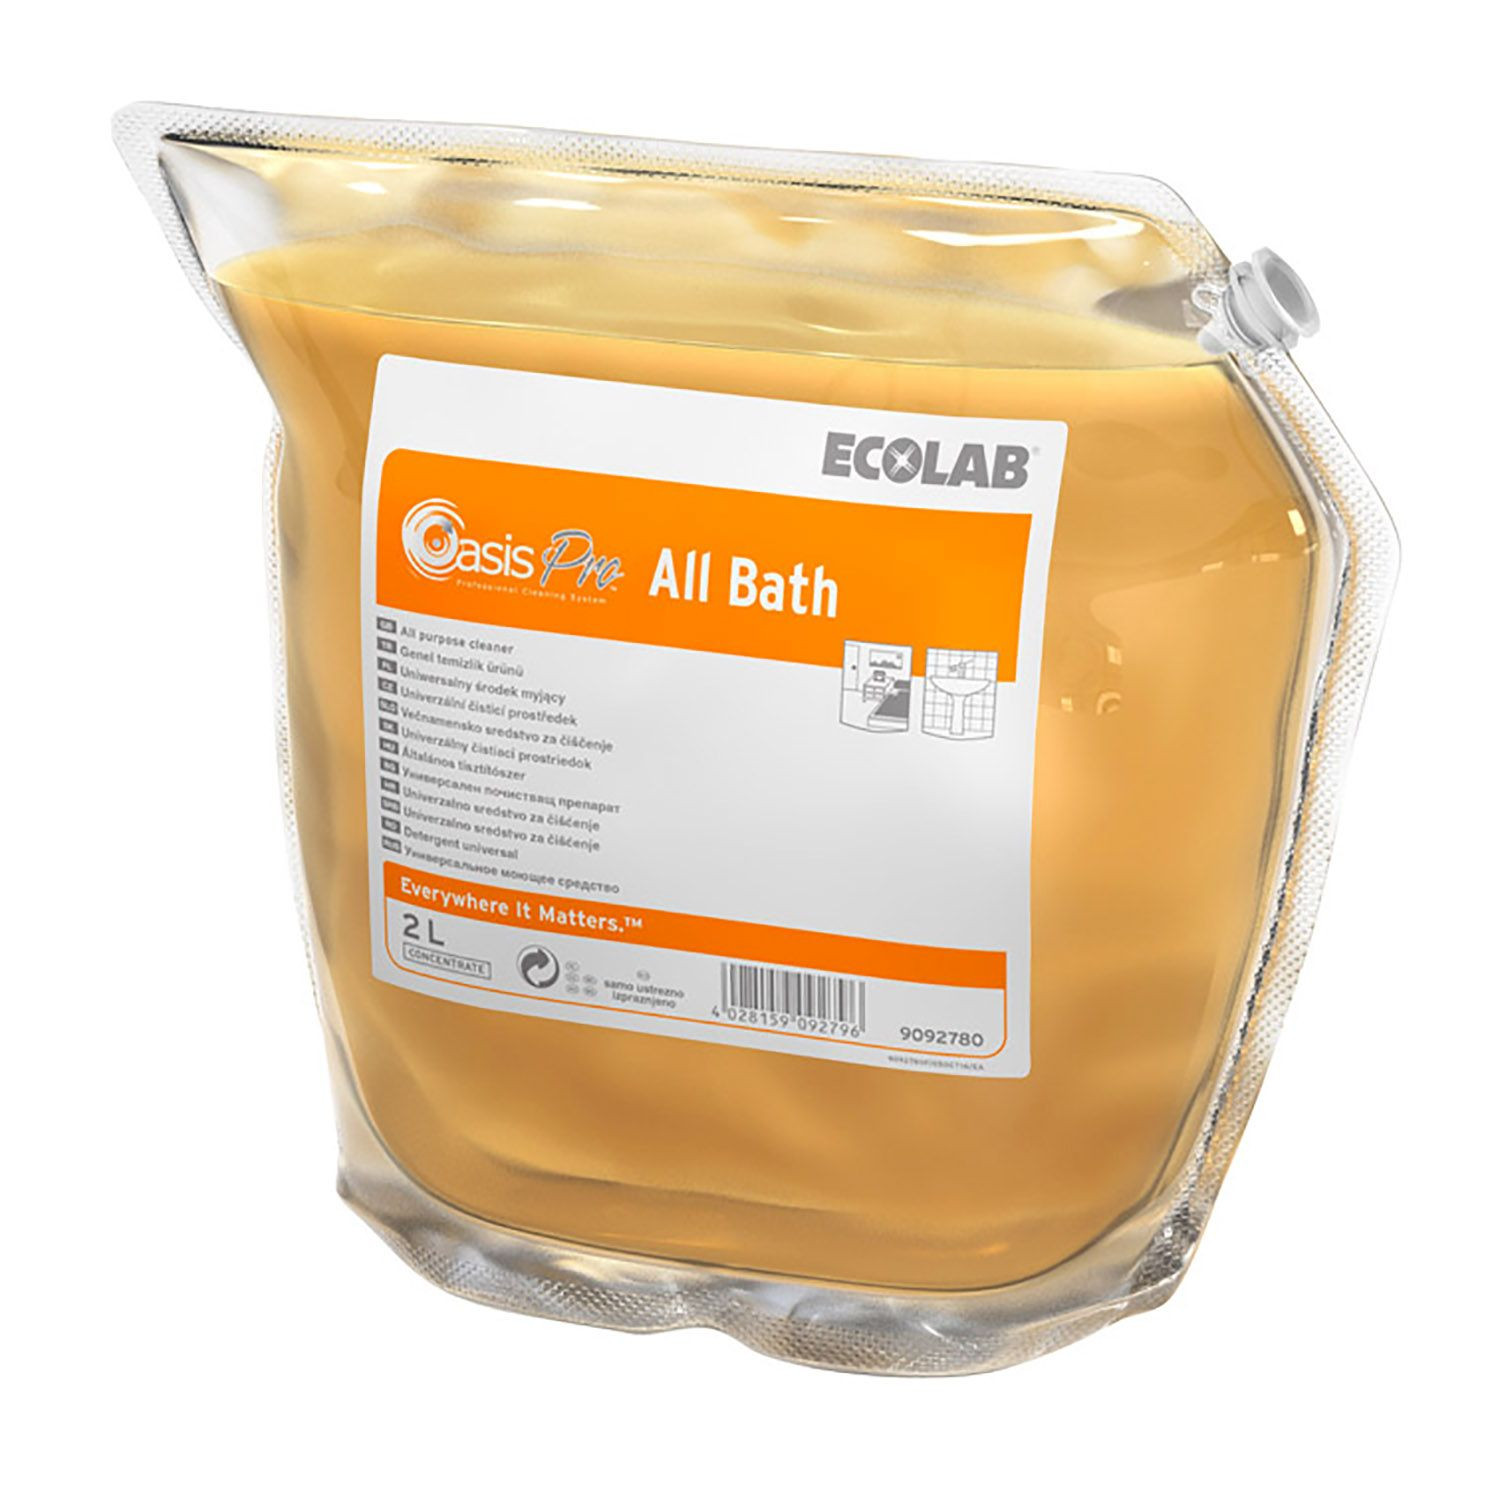 Ecolab Oasis Pro All Bath orange 2 x 2 l Sanitetsrengøring med parfume (9091800)